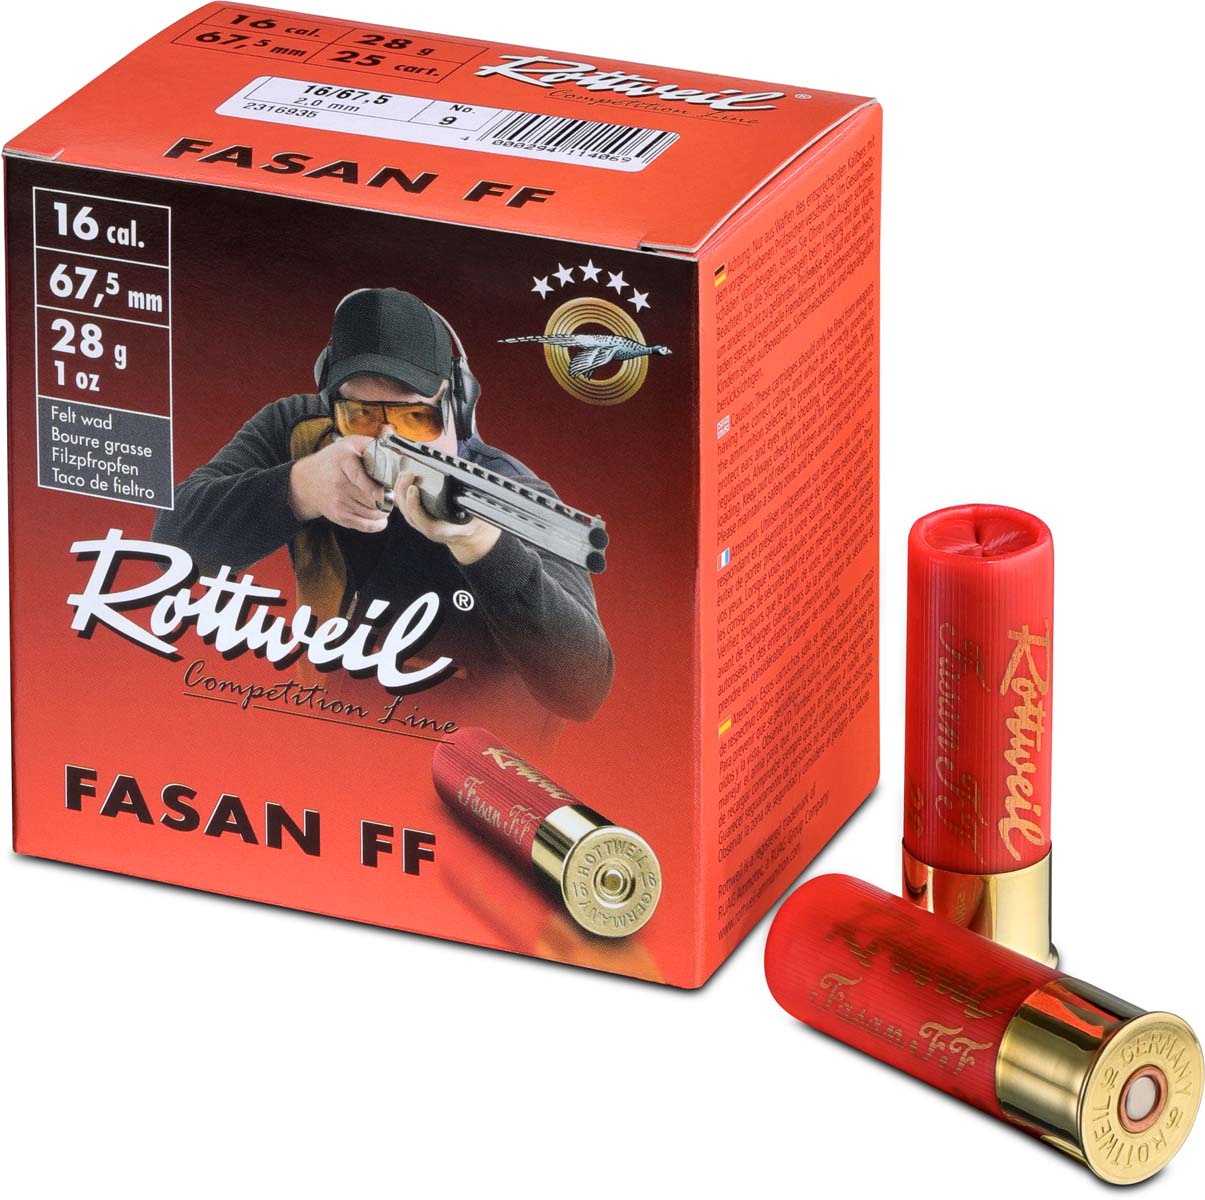 Rottweil 16/67,5 Fasan FF Trap 2,4mm - 28g - eigens für das sportliche Trainings- und Wettkampfschießen konstruiert